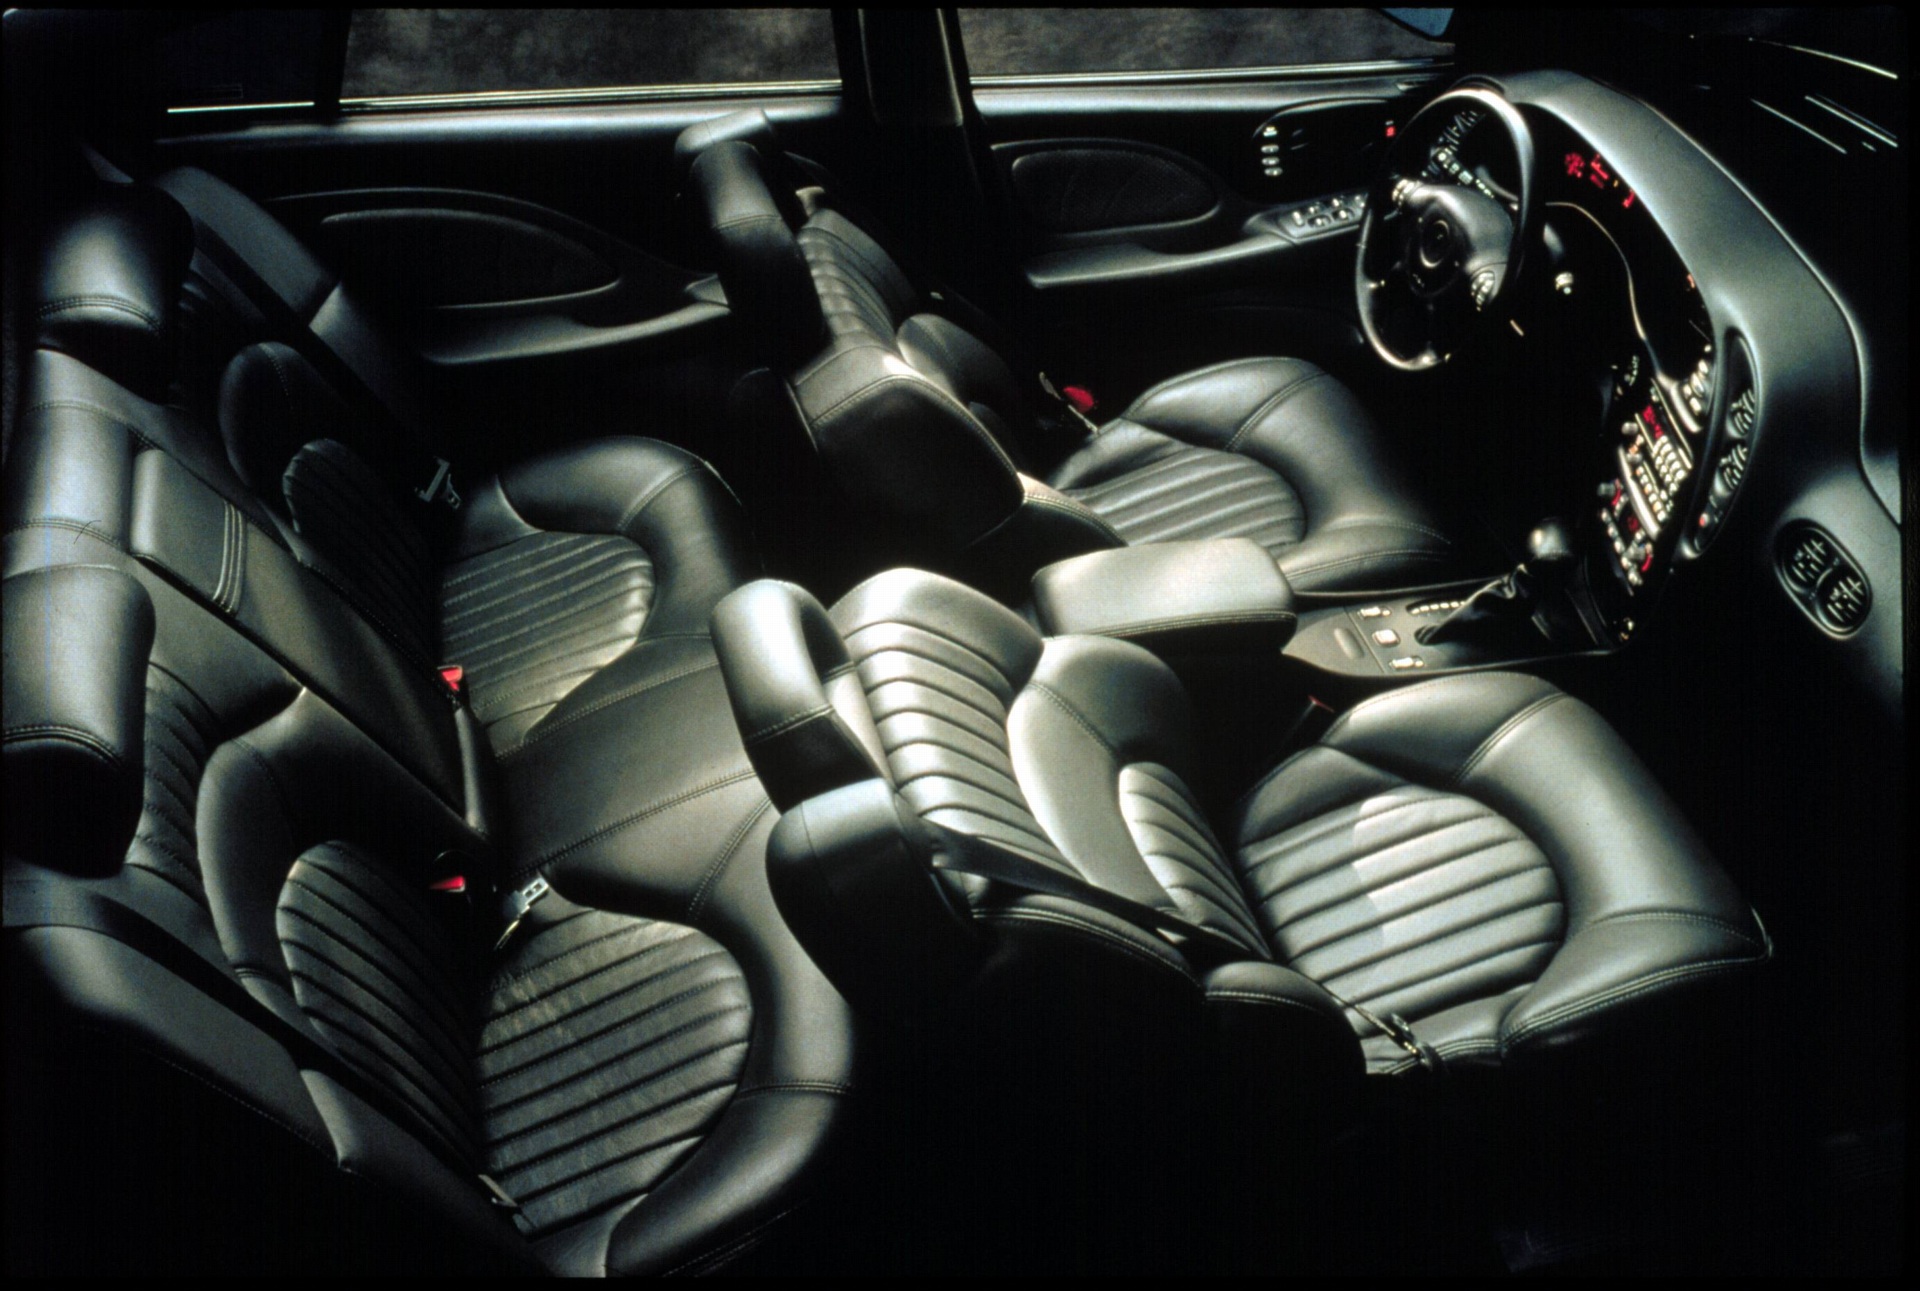 2000 Pontiac Bonneville